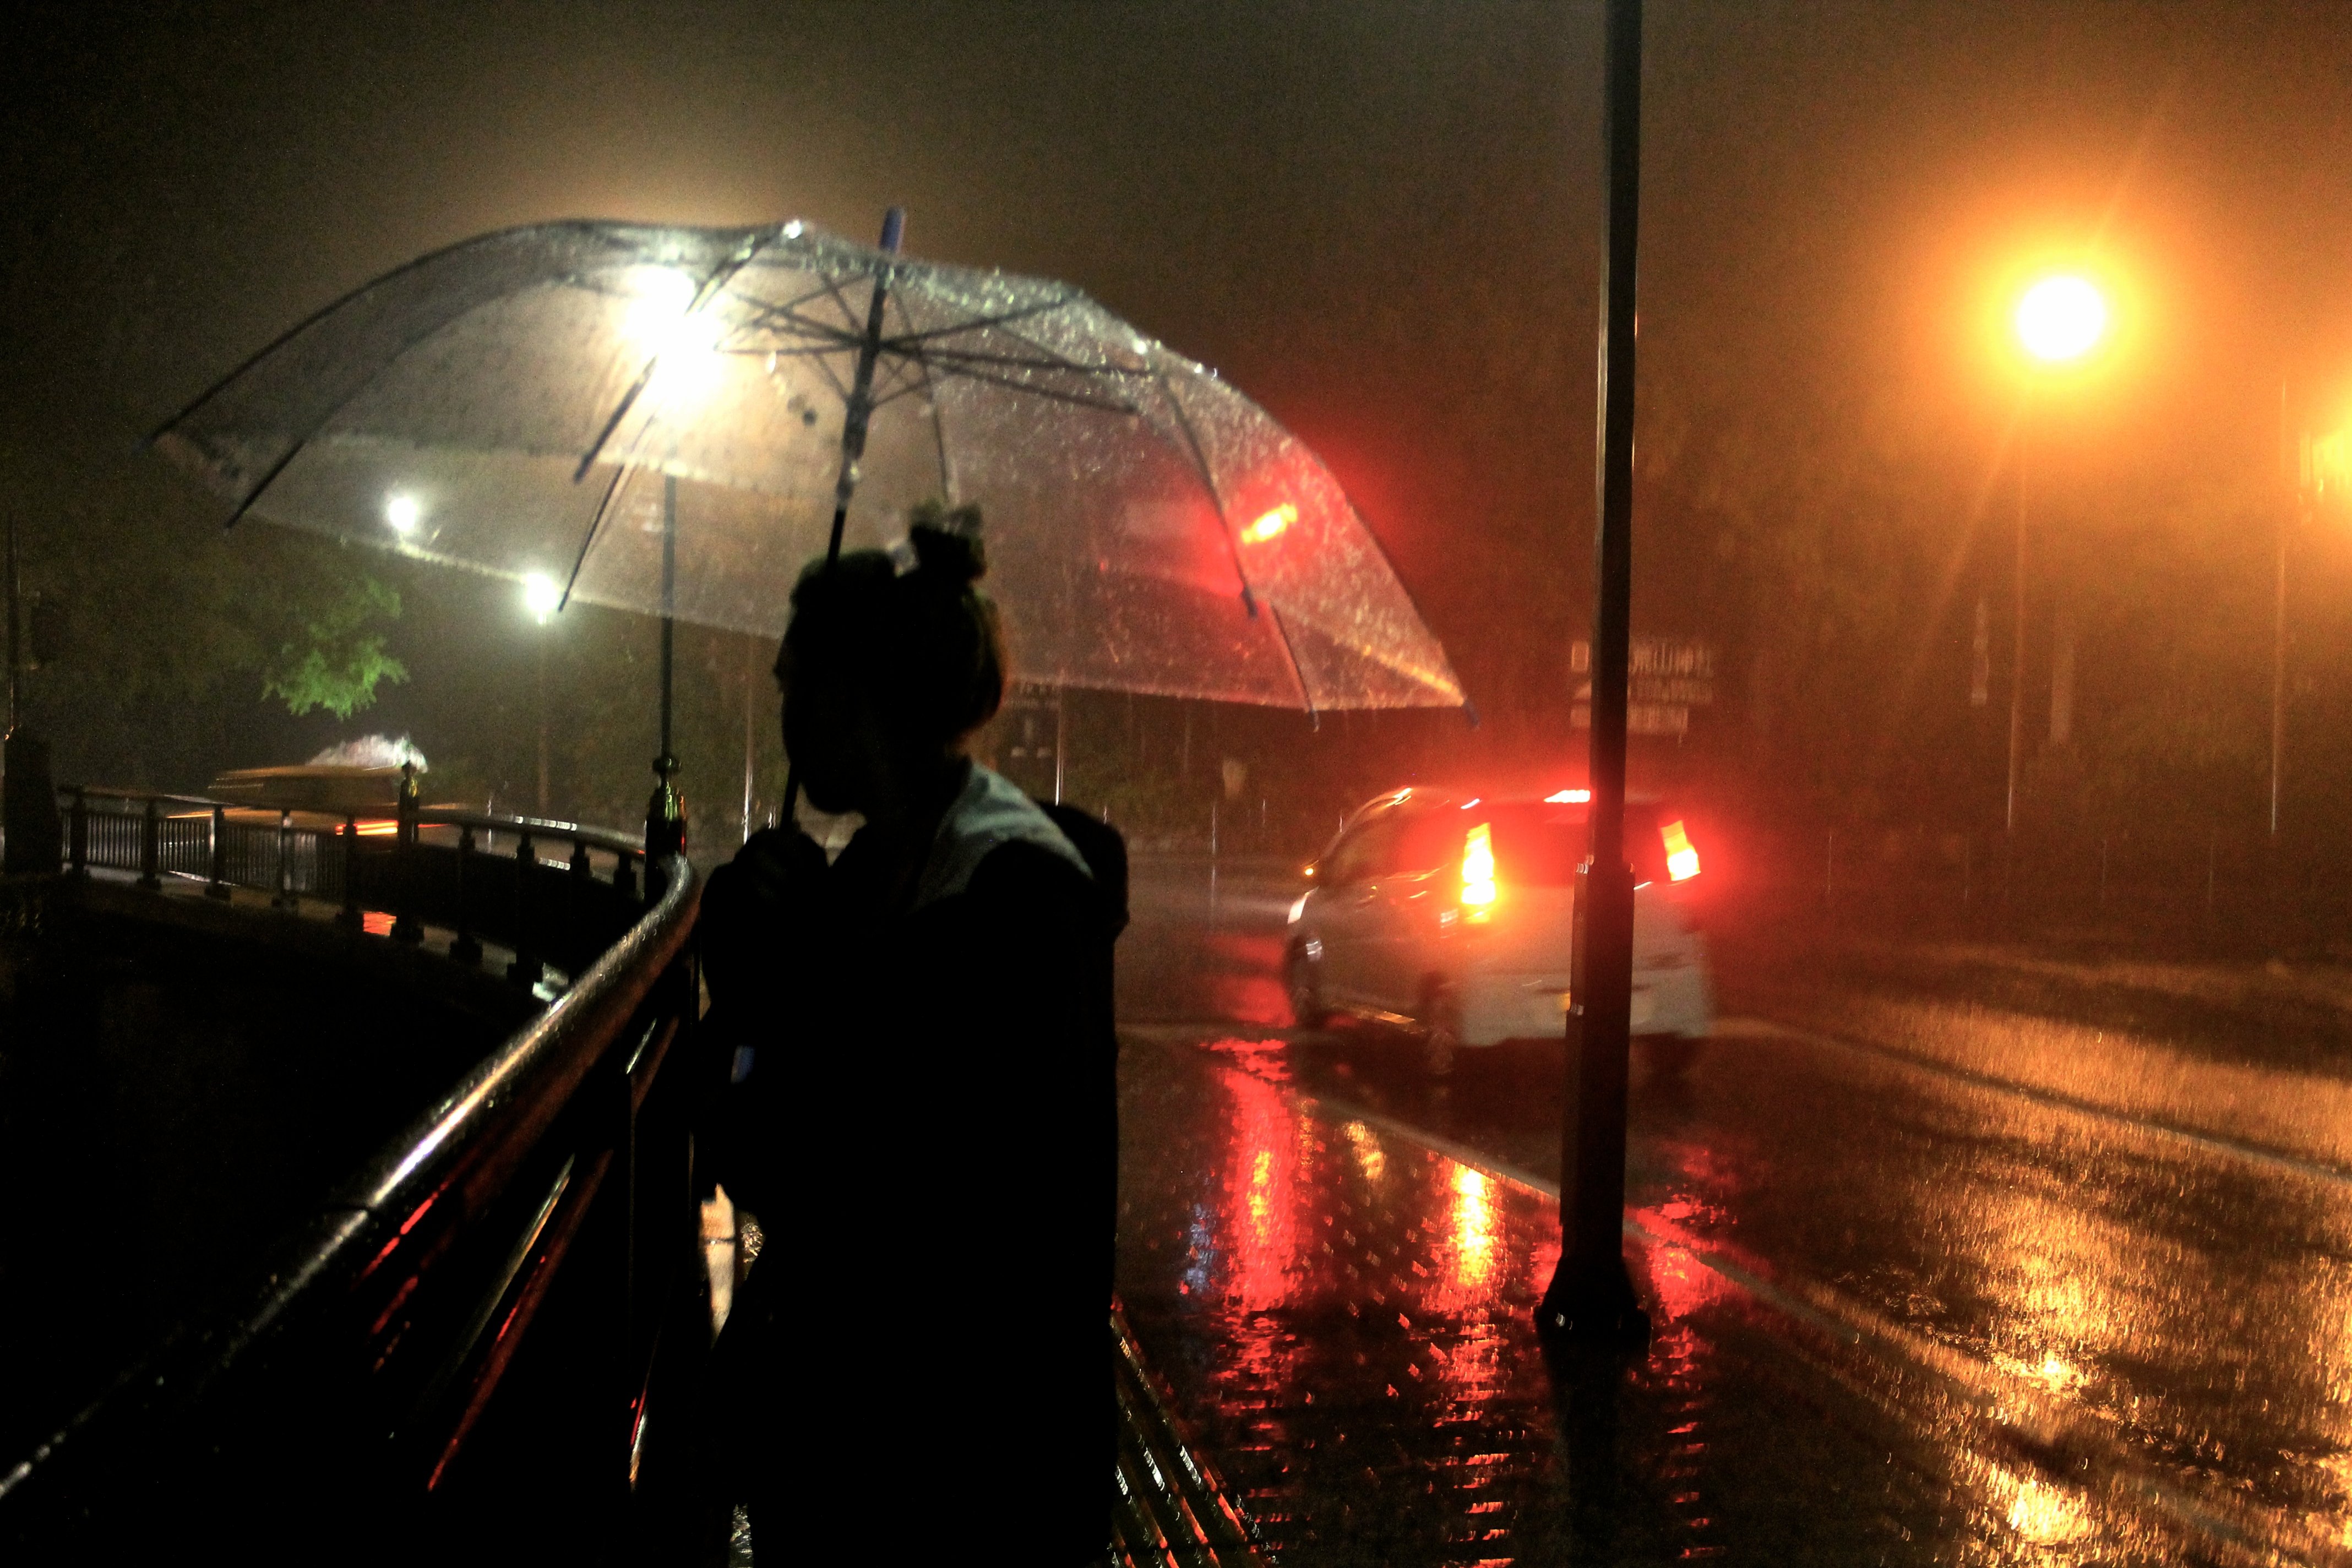 Но ночь сильней ее. Дождь ночью. Человек под зонтом. Город ночью под дождем. "Дождливый вечер".